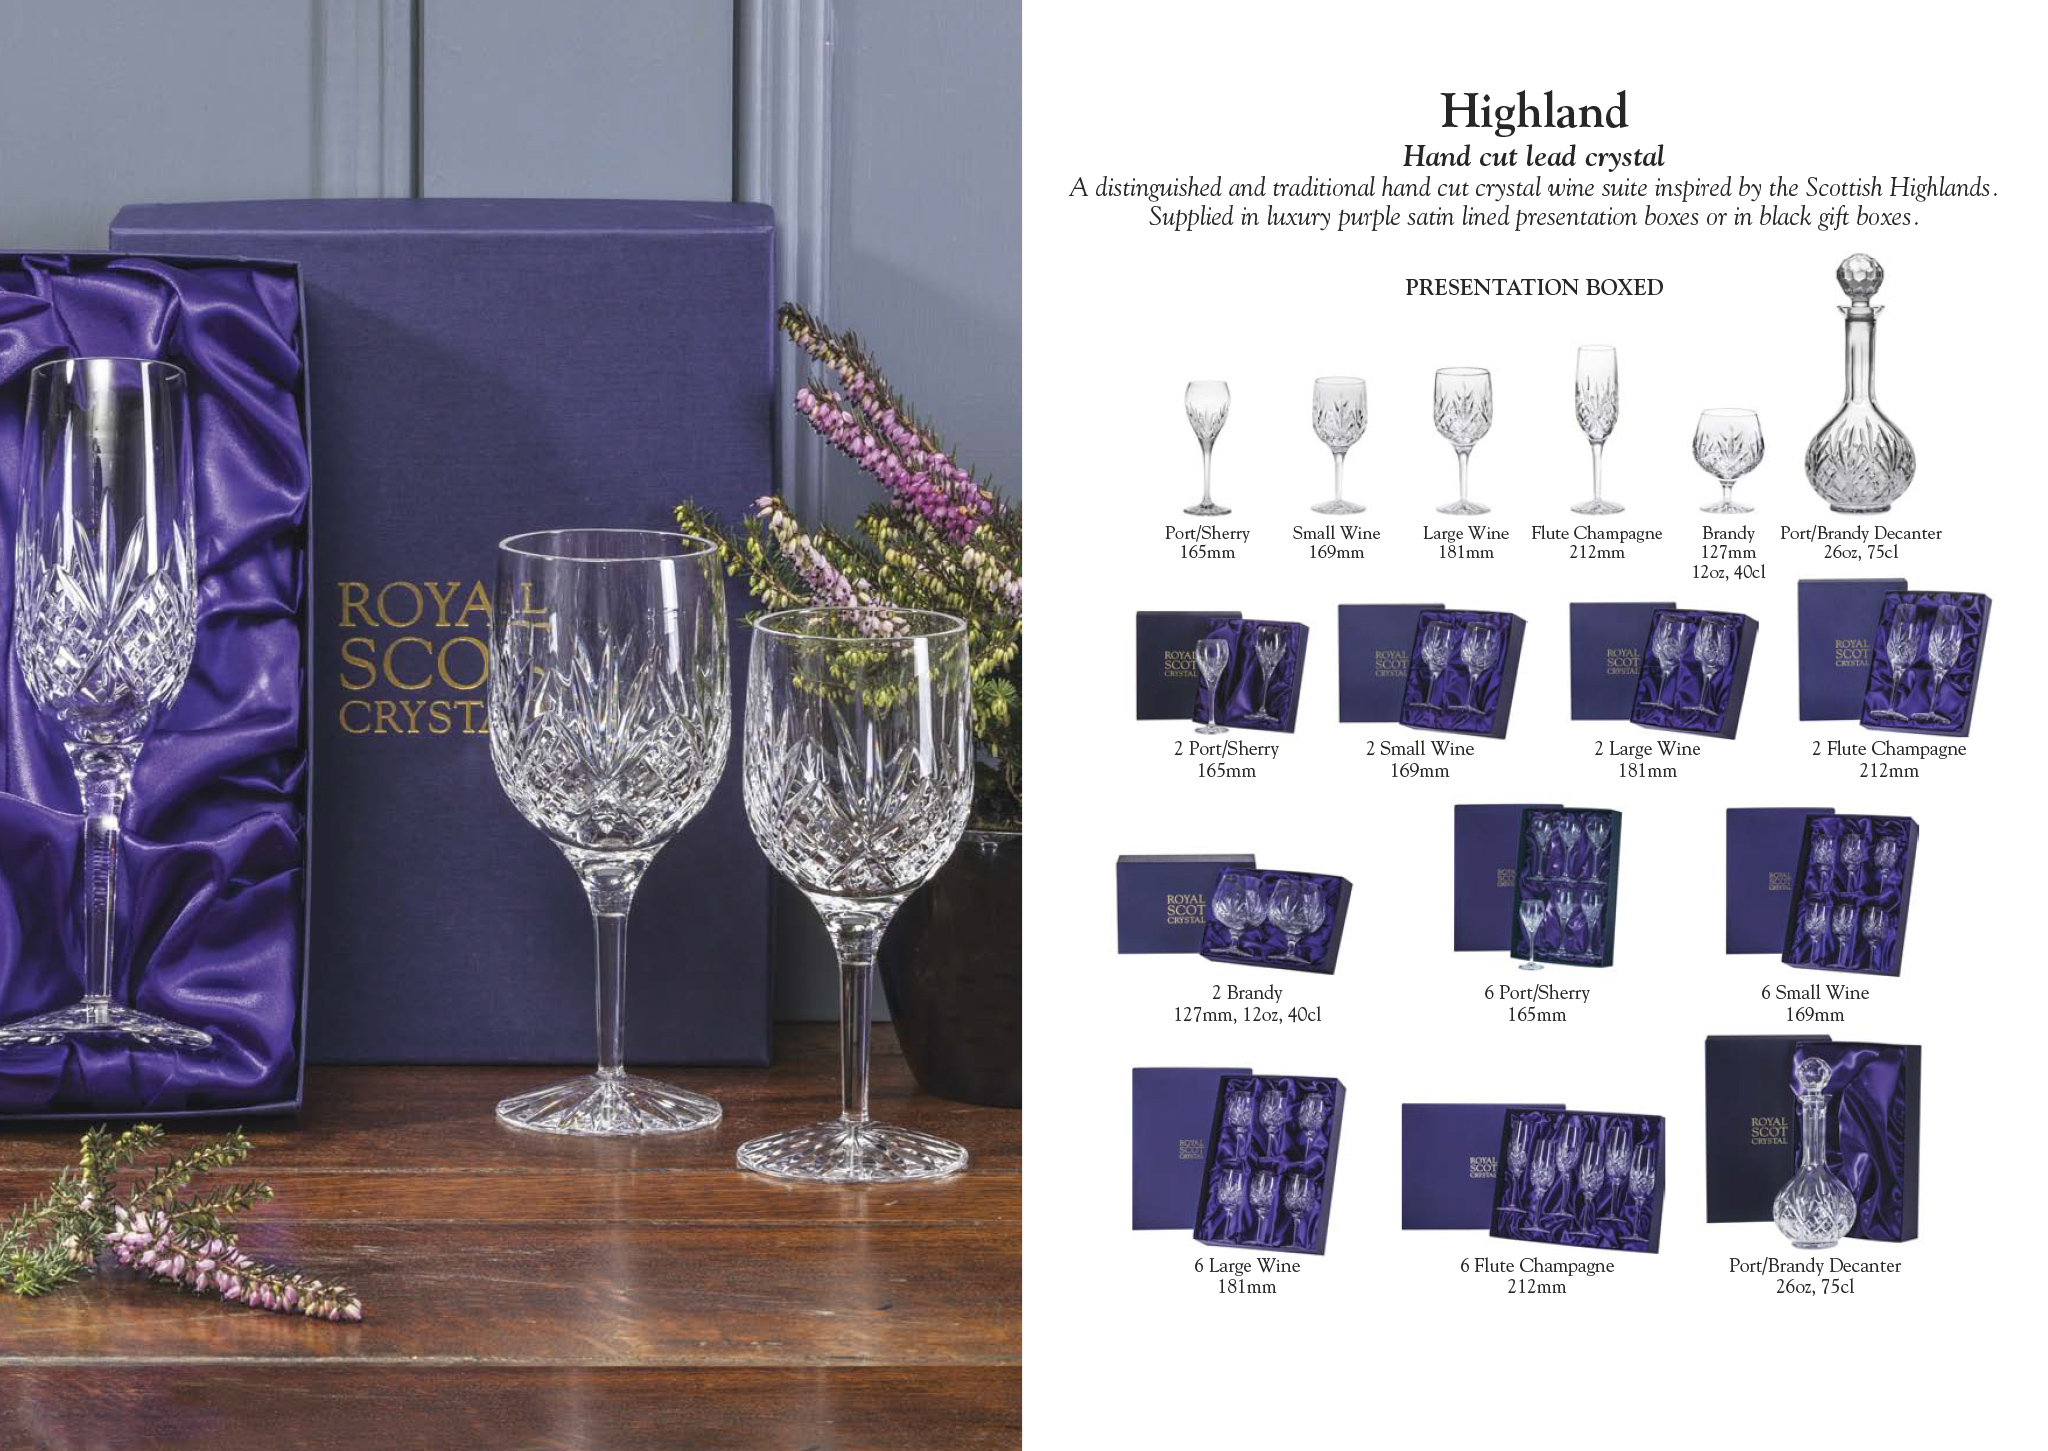 Royal Scot Crystal - Highland